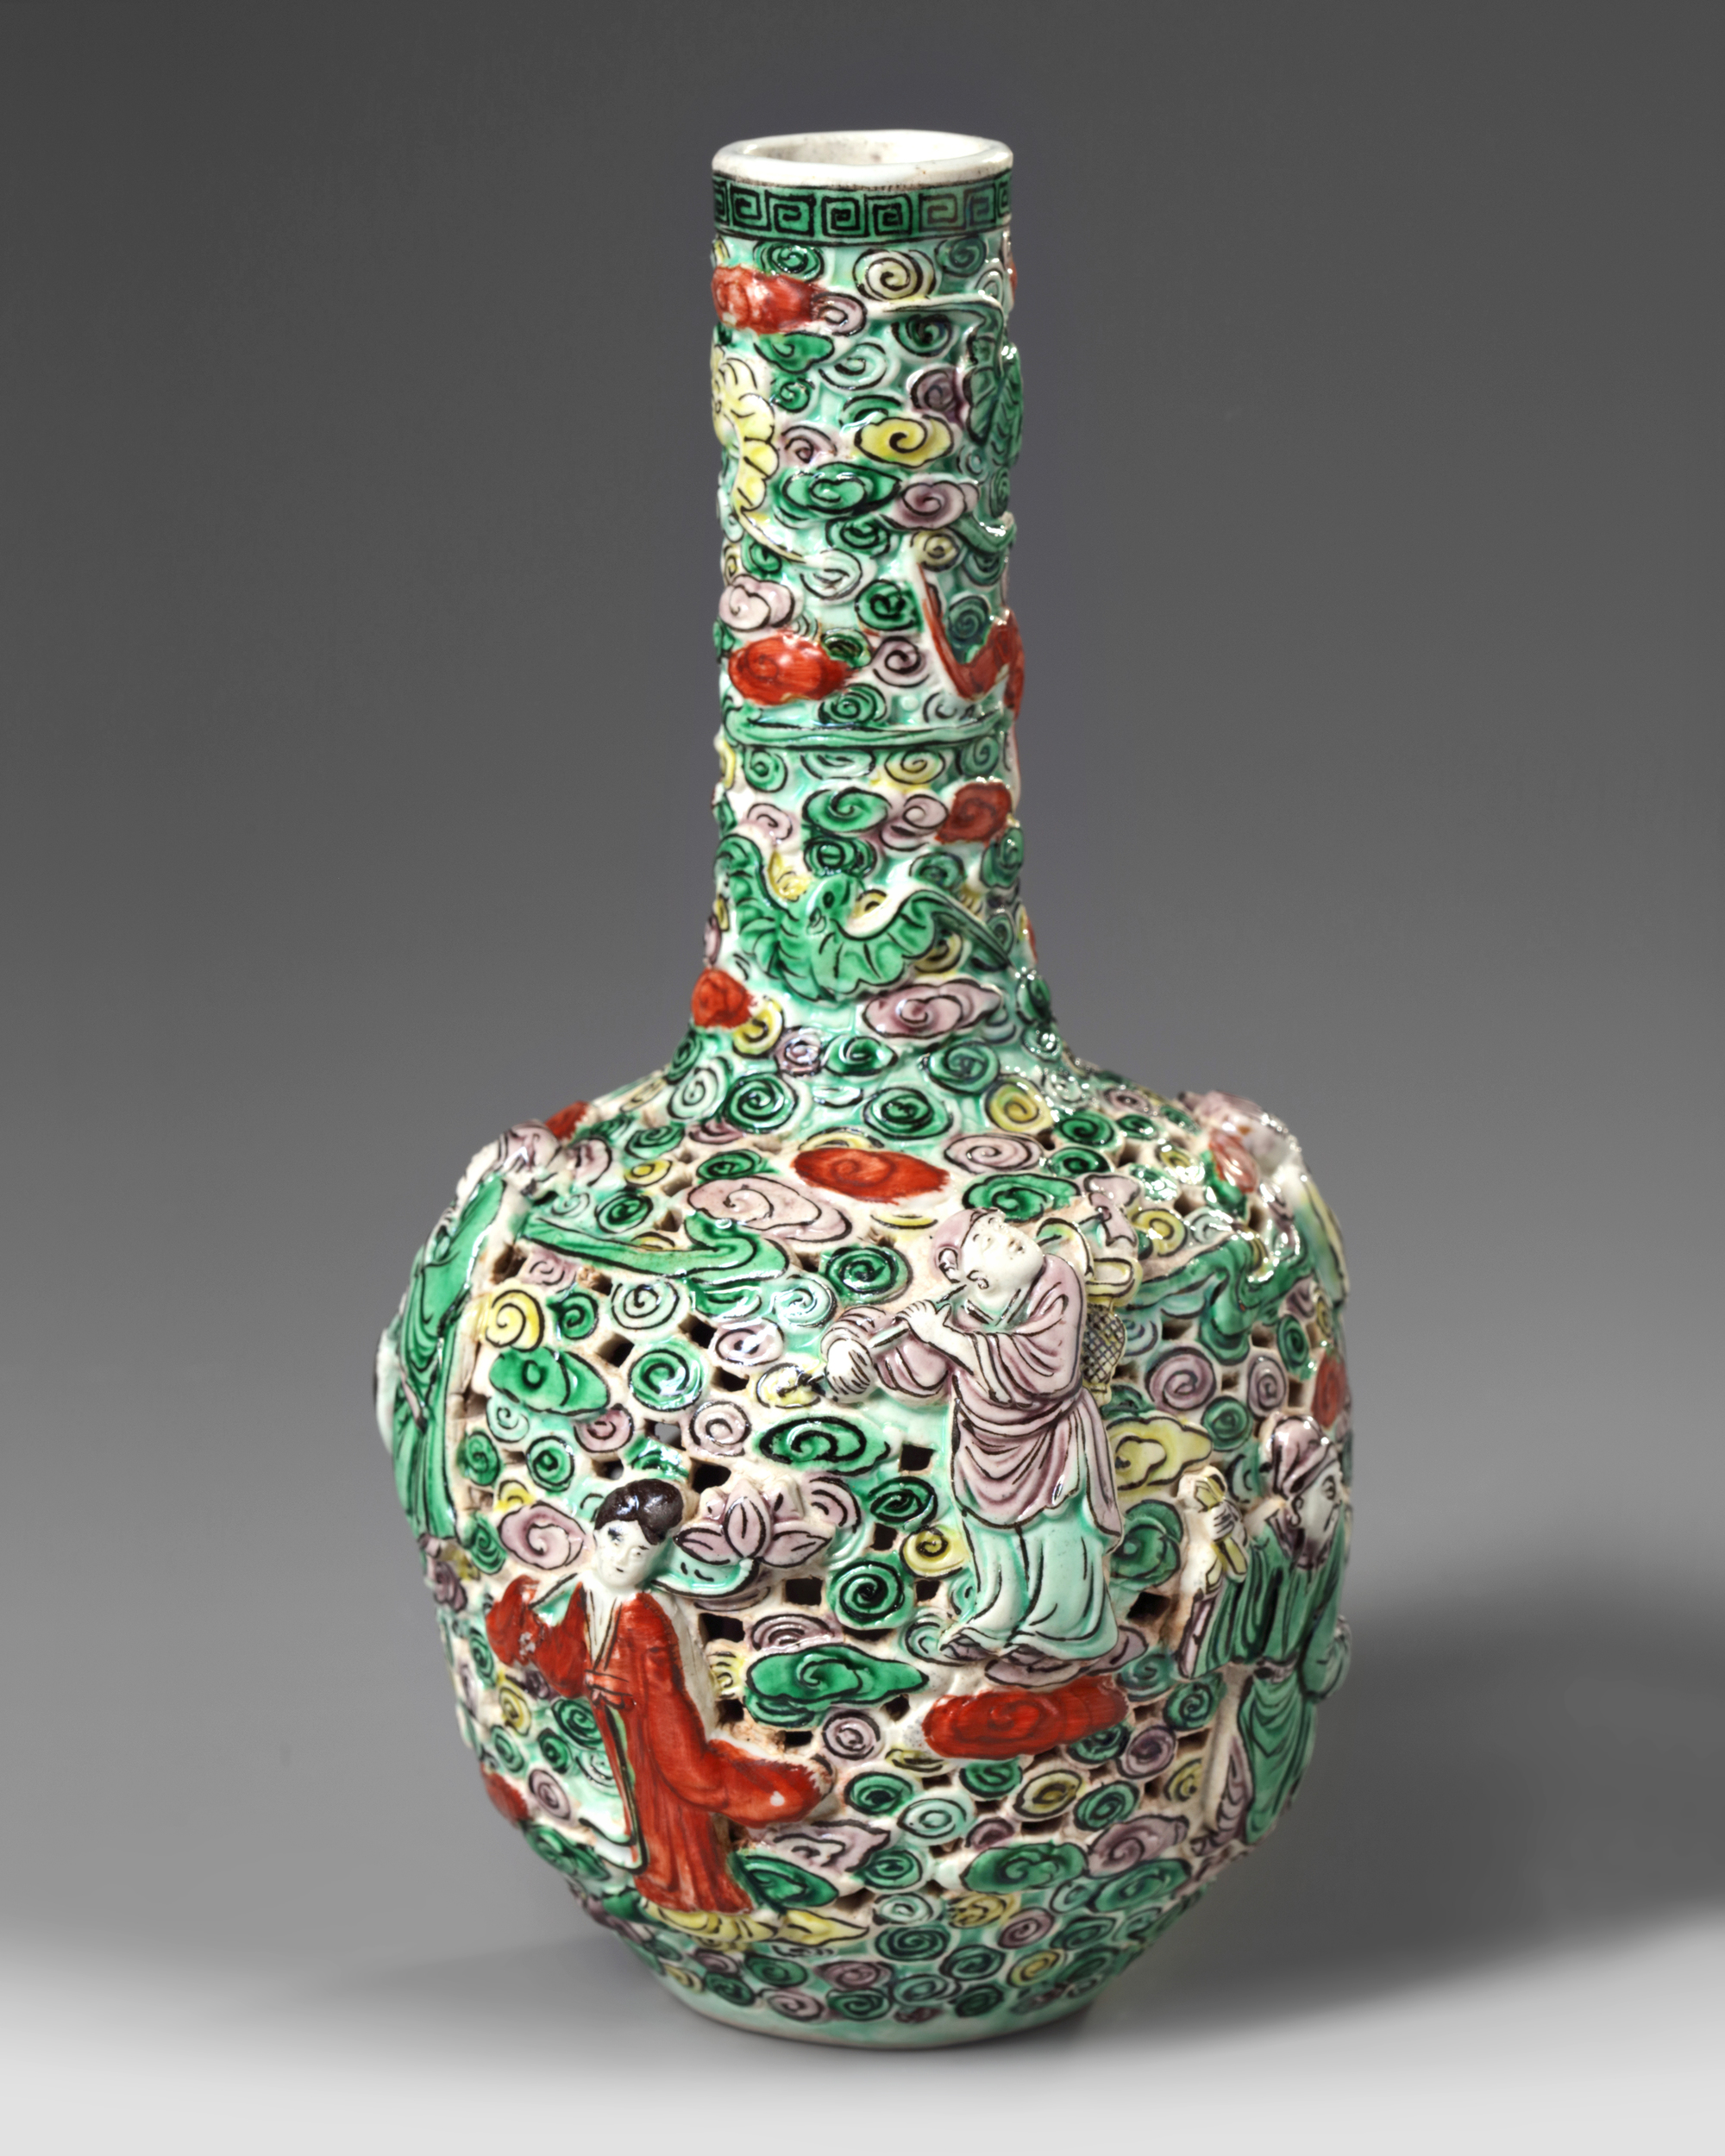 Details about   9.1" China Colour Enamels Porcelain Taoism Eight Immortals Octagonal Bottle Vase 